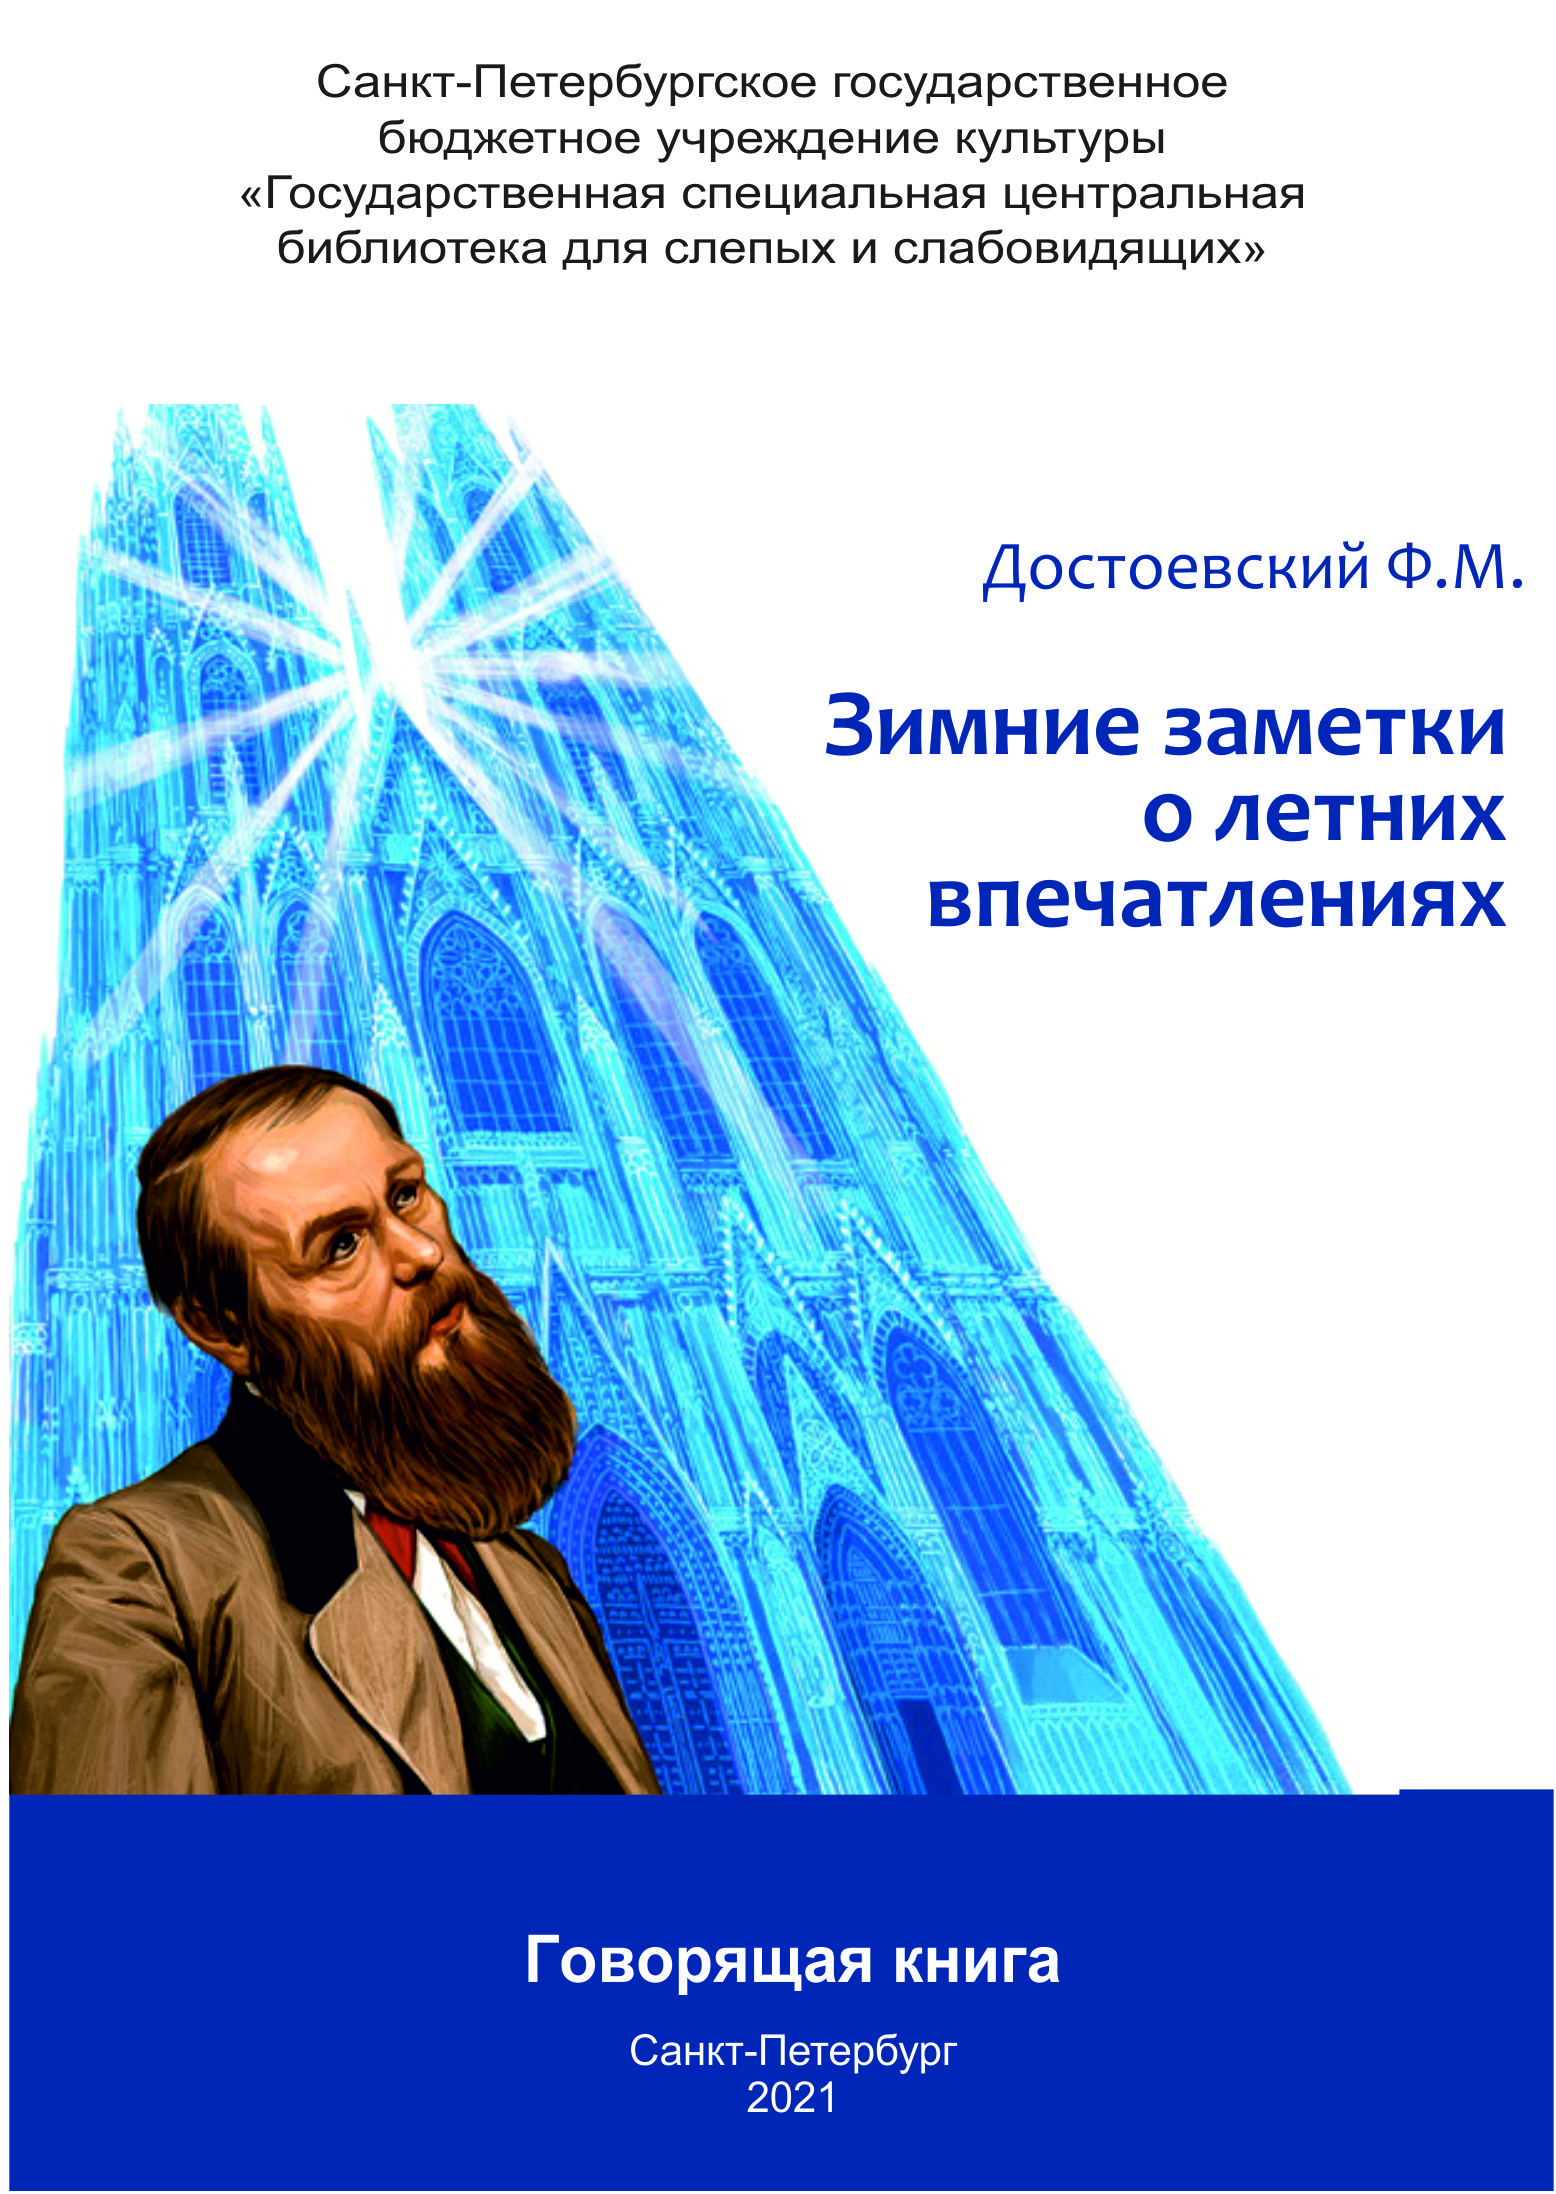 обложка издания с изображением портрета Достоевского